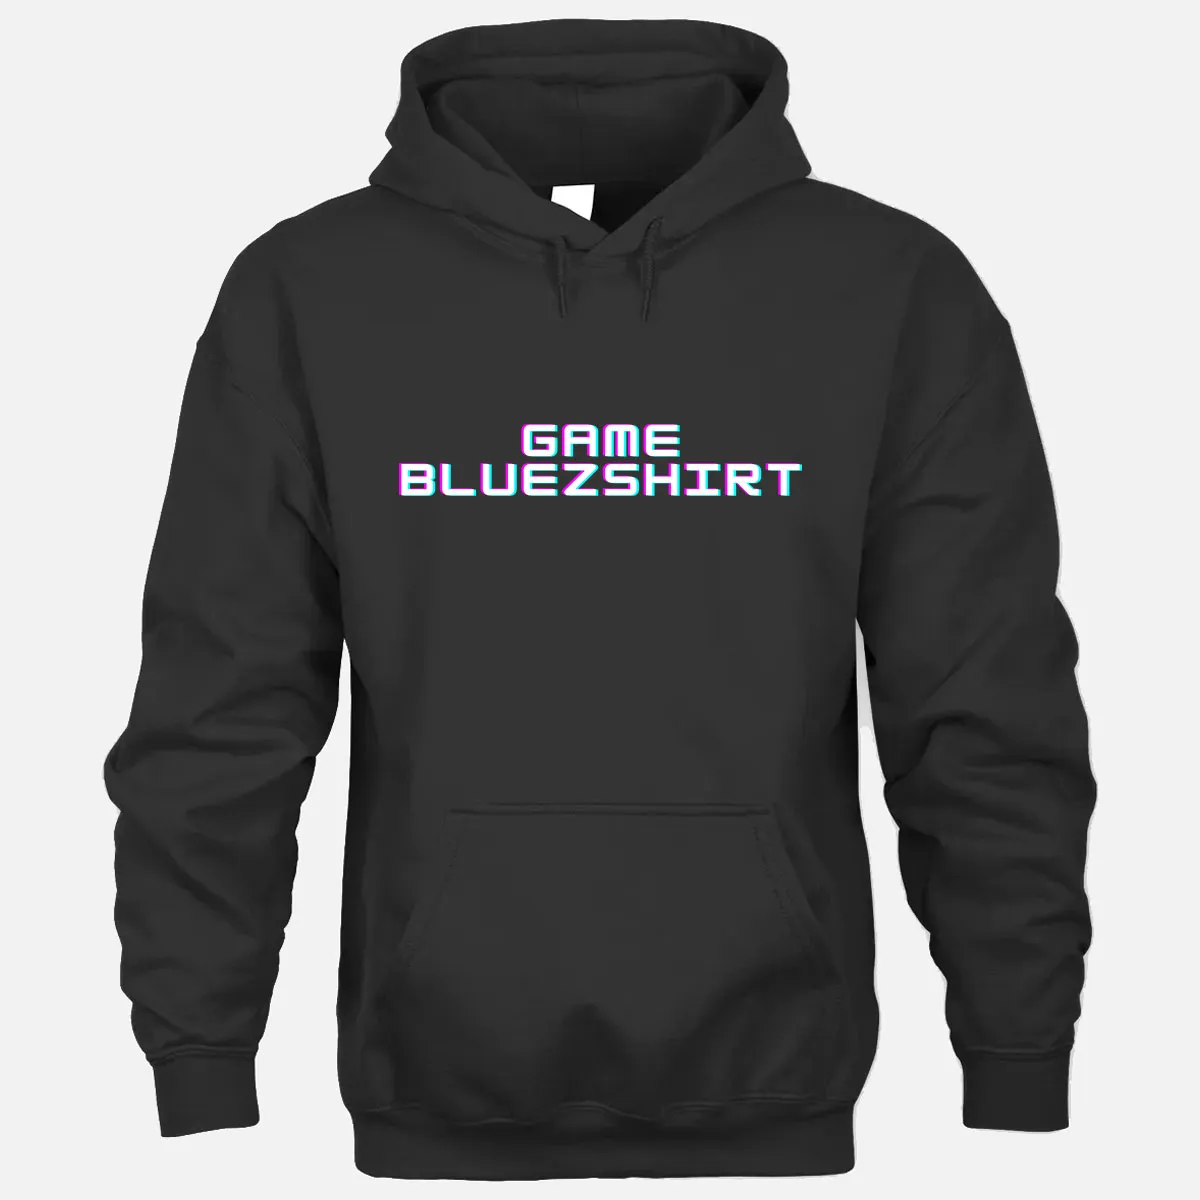 Game Bluezshirt Hoodie - Black